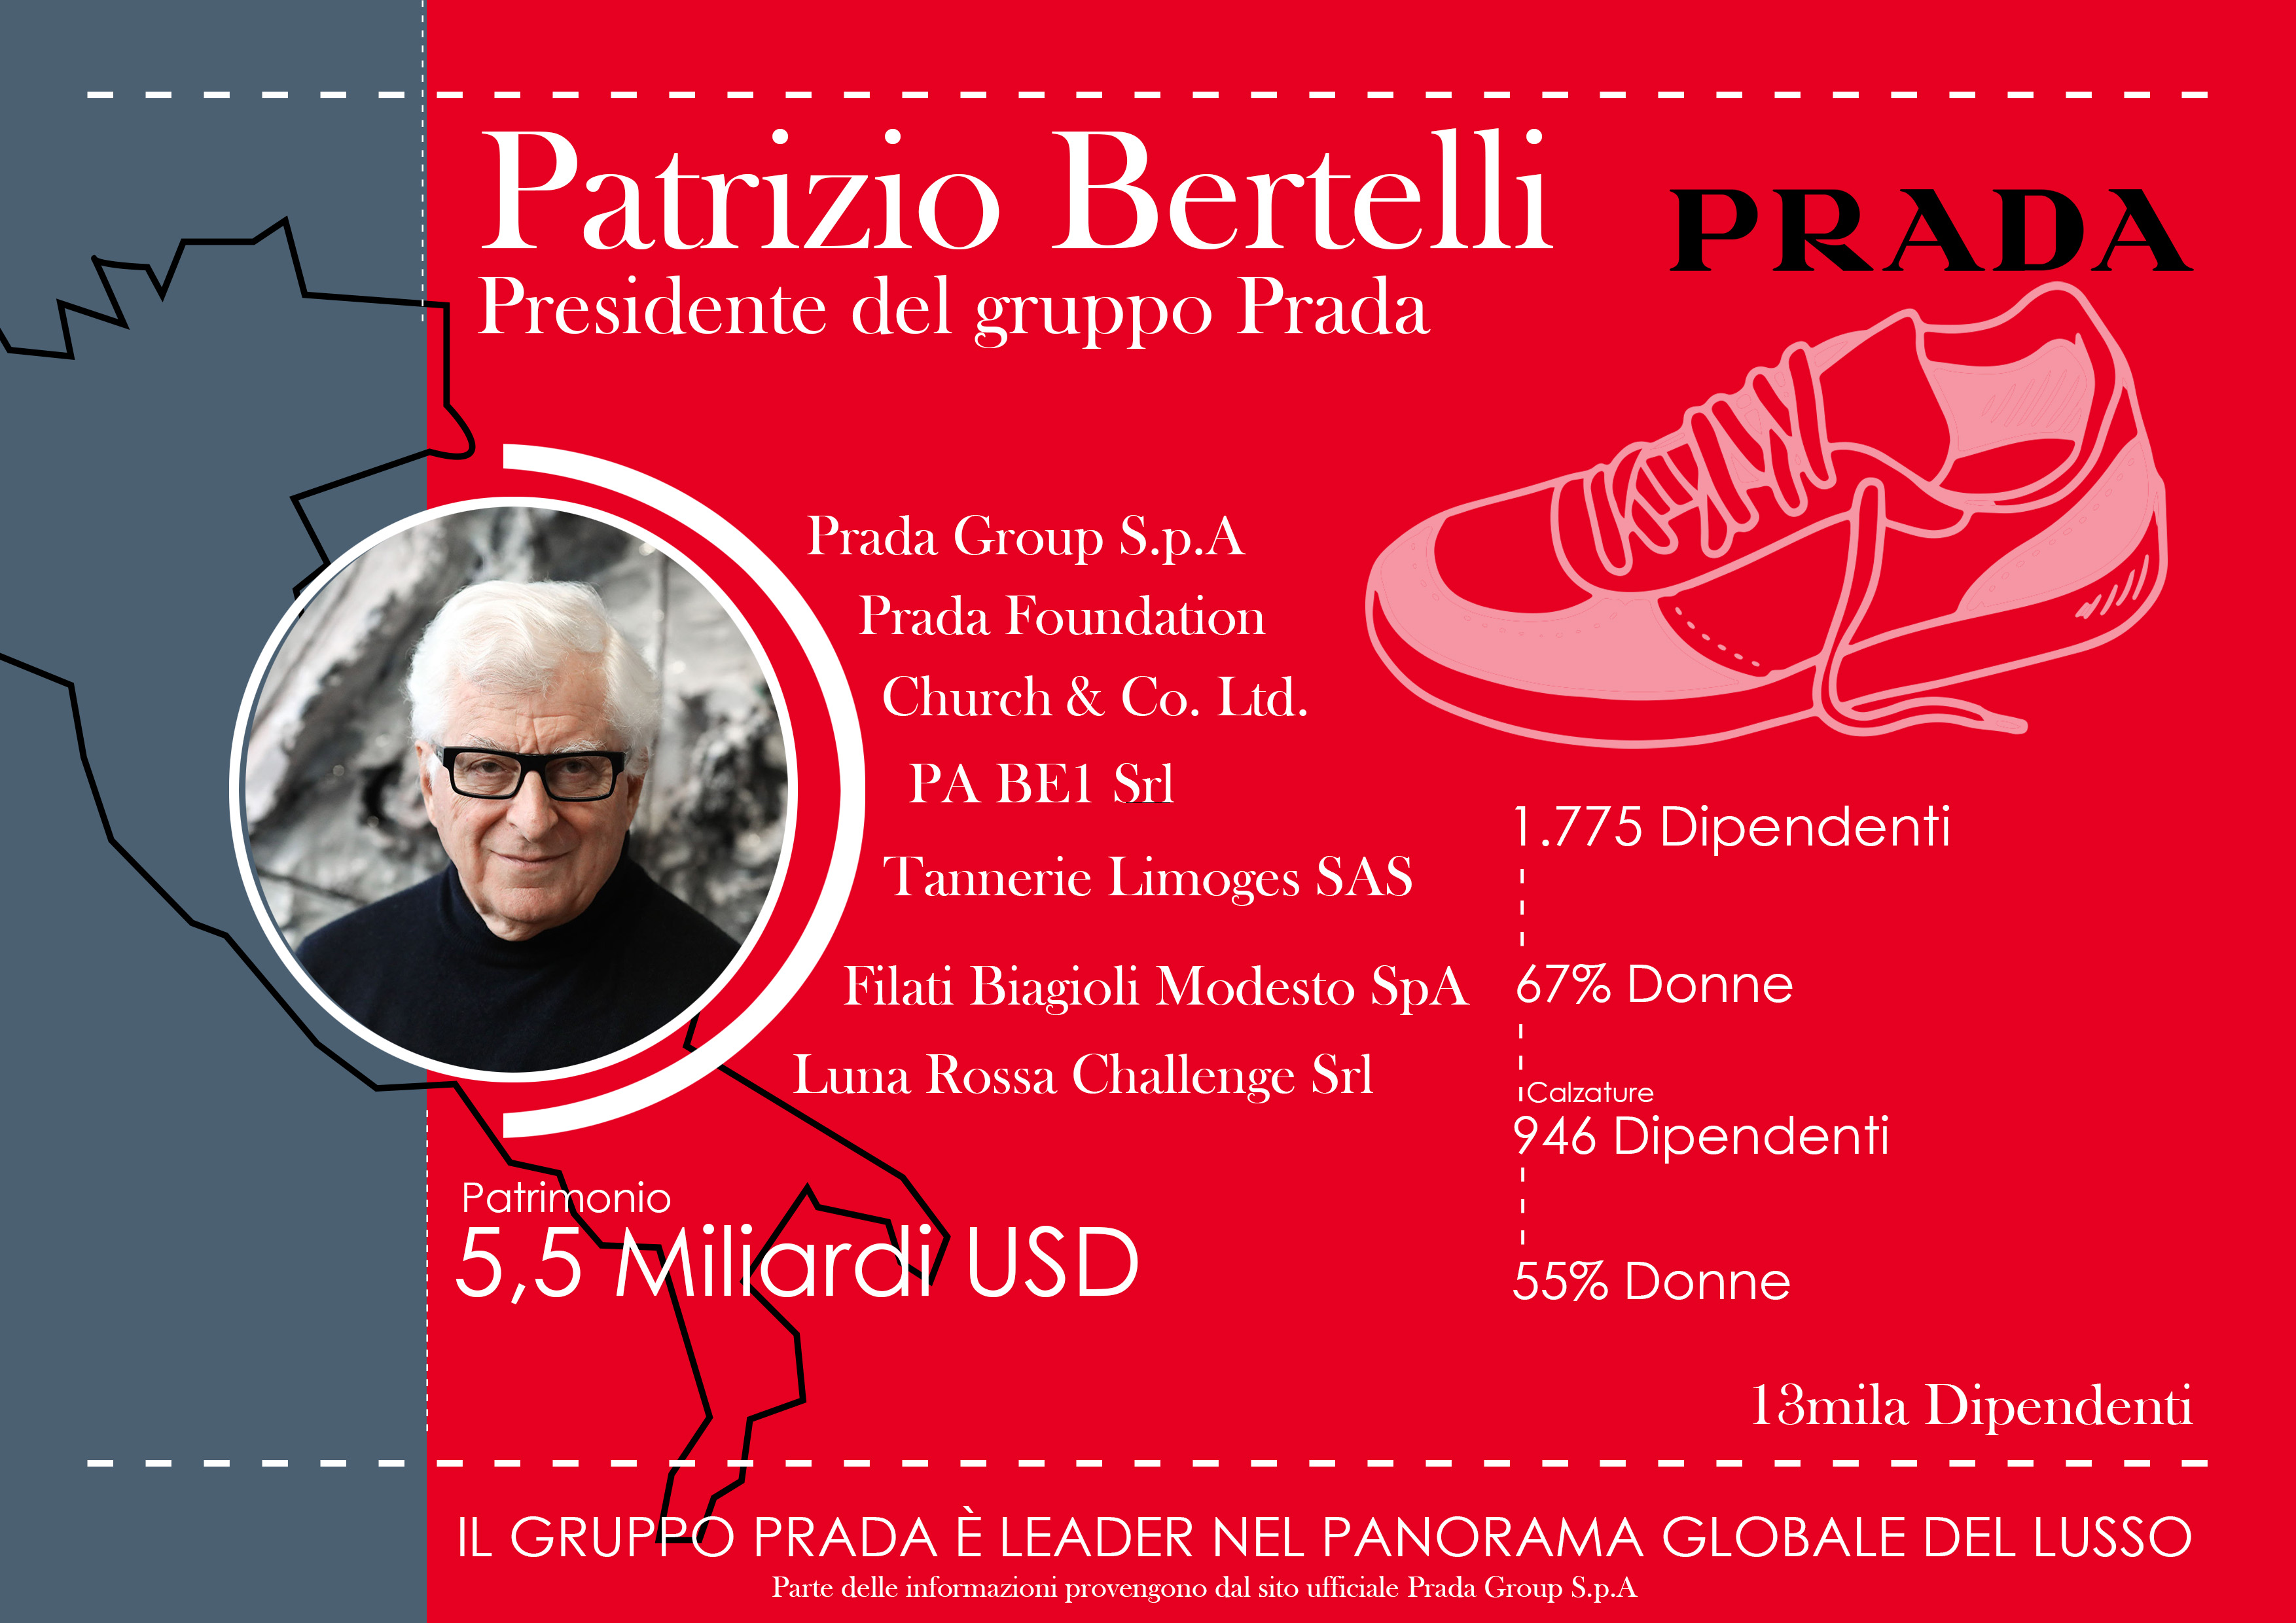  Web Reputation Patrizio Bertelli Presidente del gruppo da 5,5 miliardi USD